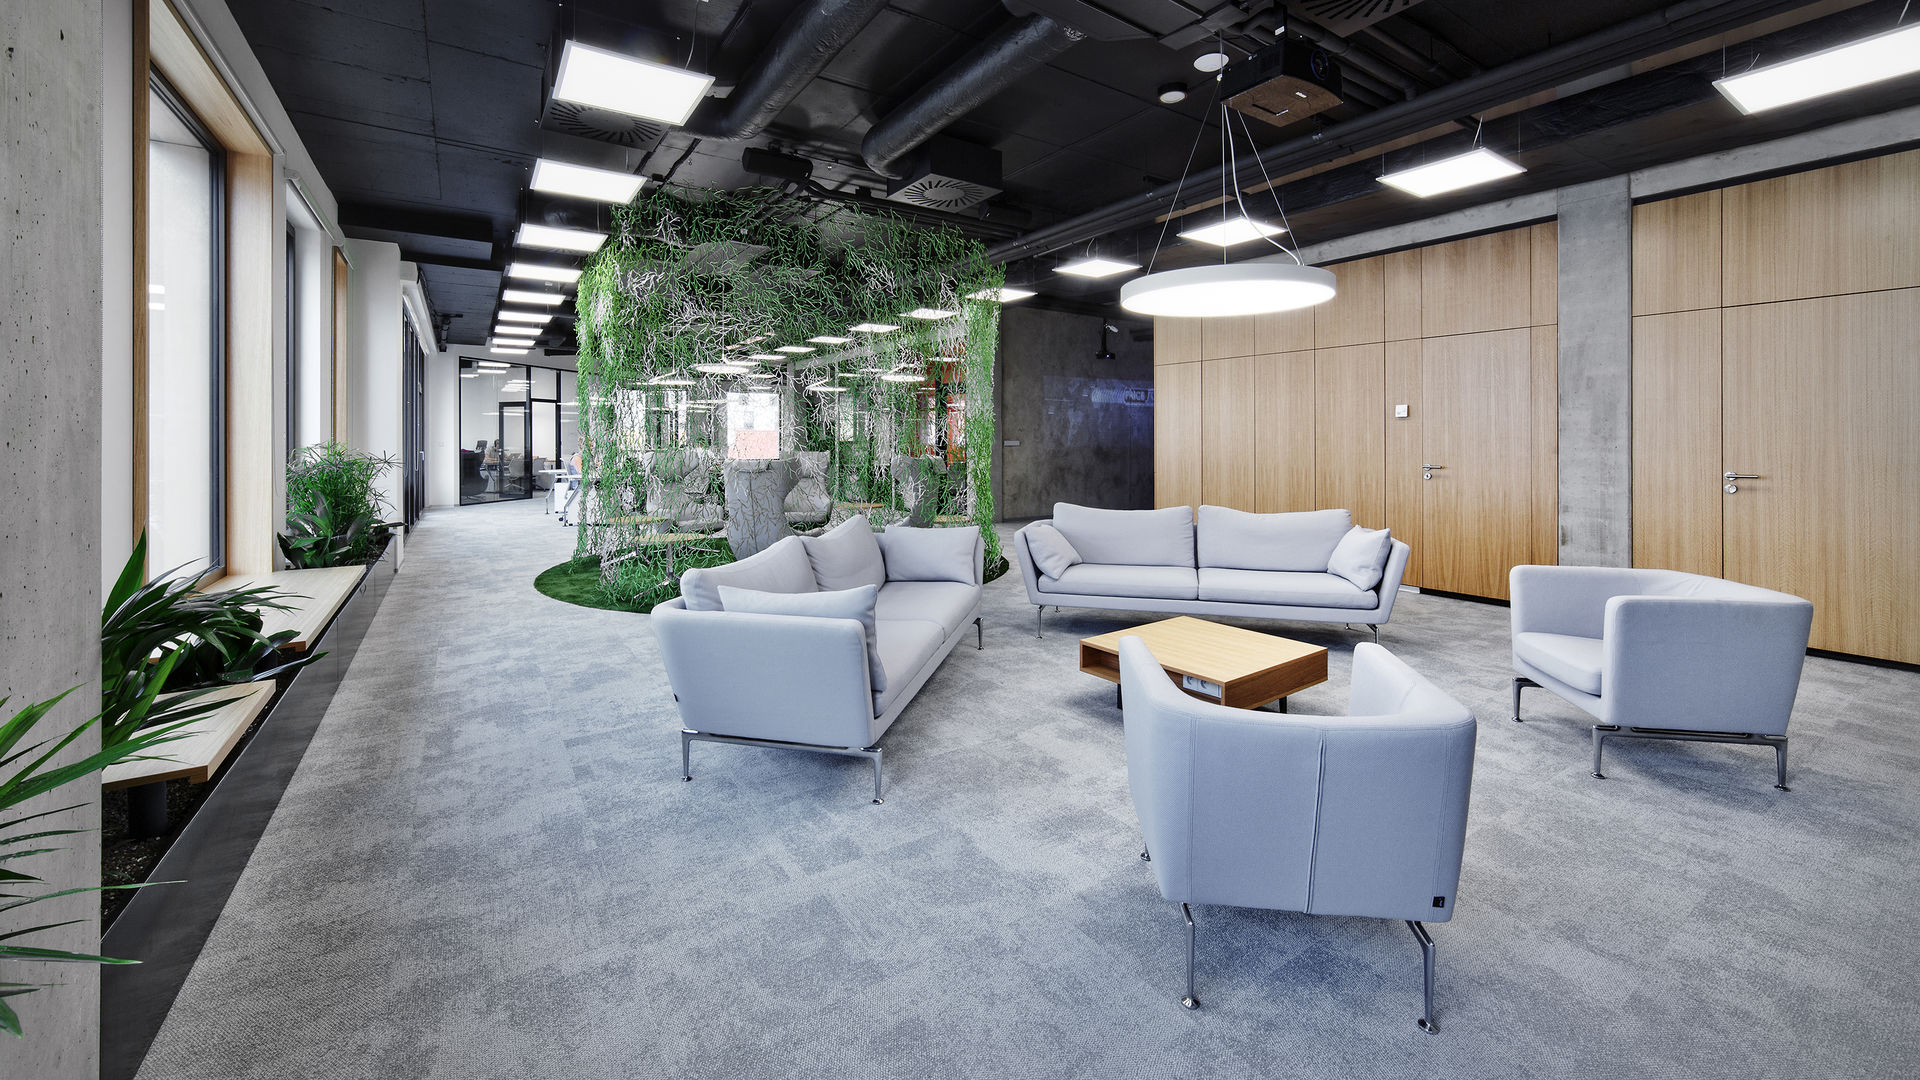 Suita Club Vitra Display Interior Design Office Space